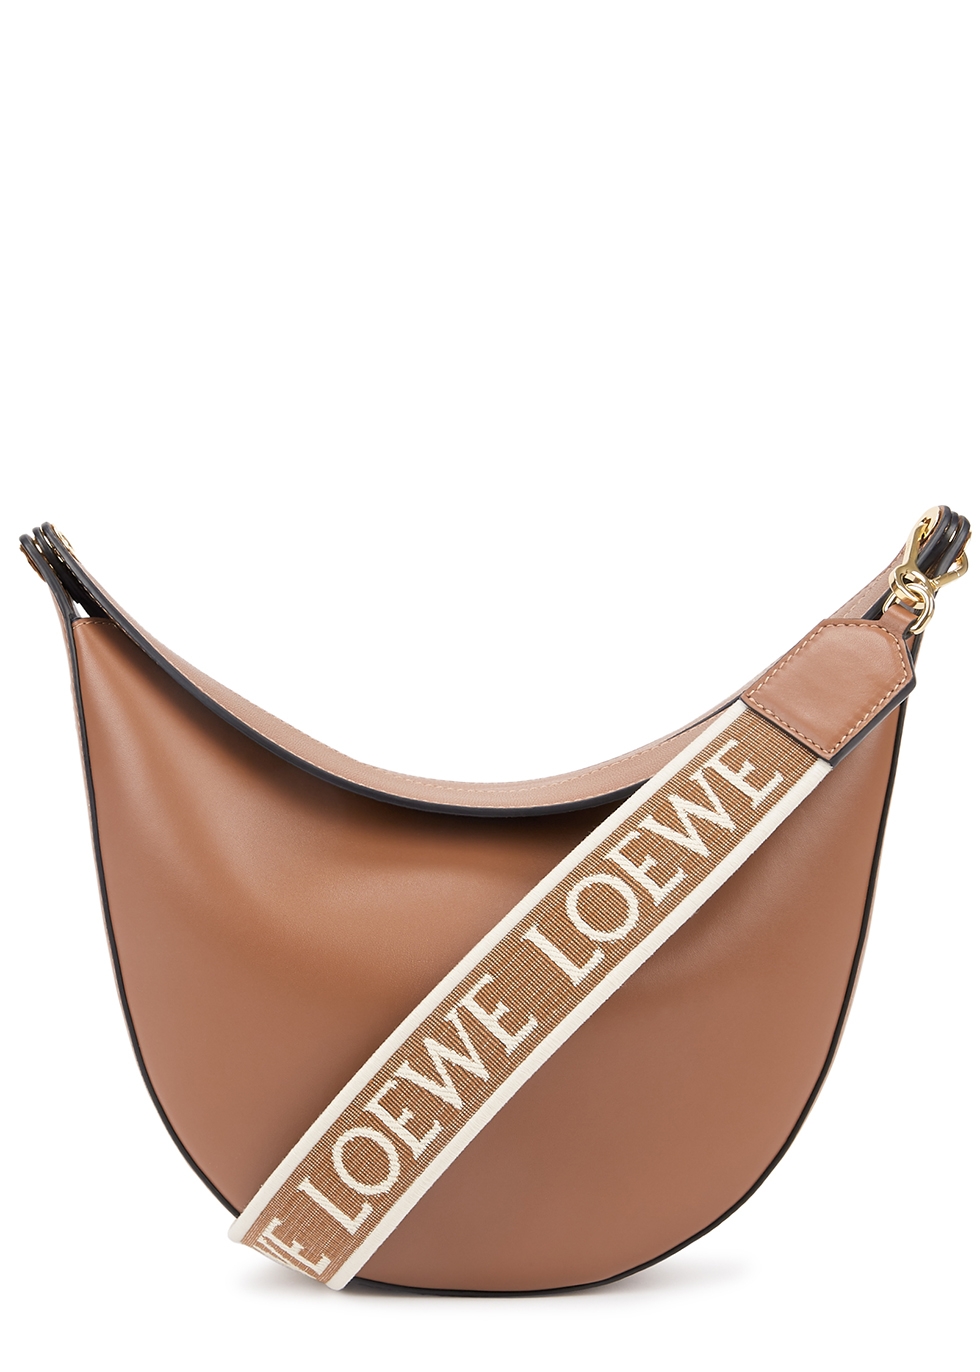 Luna brown leather shoulder bag